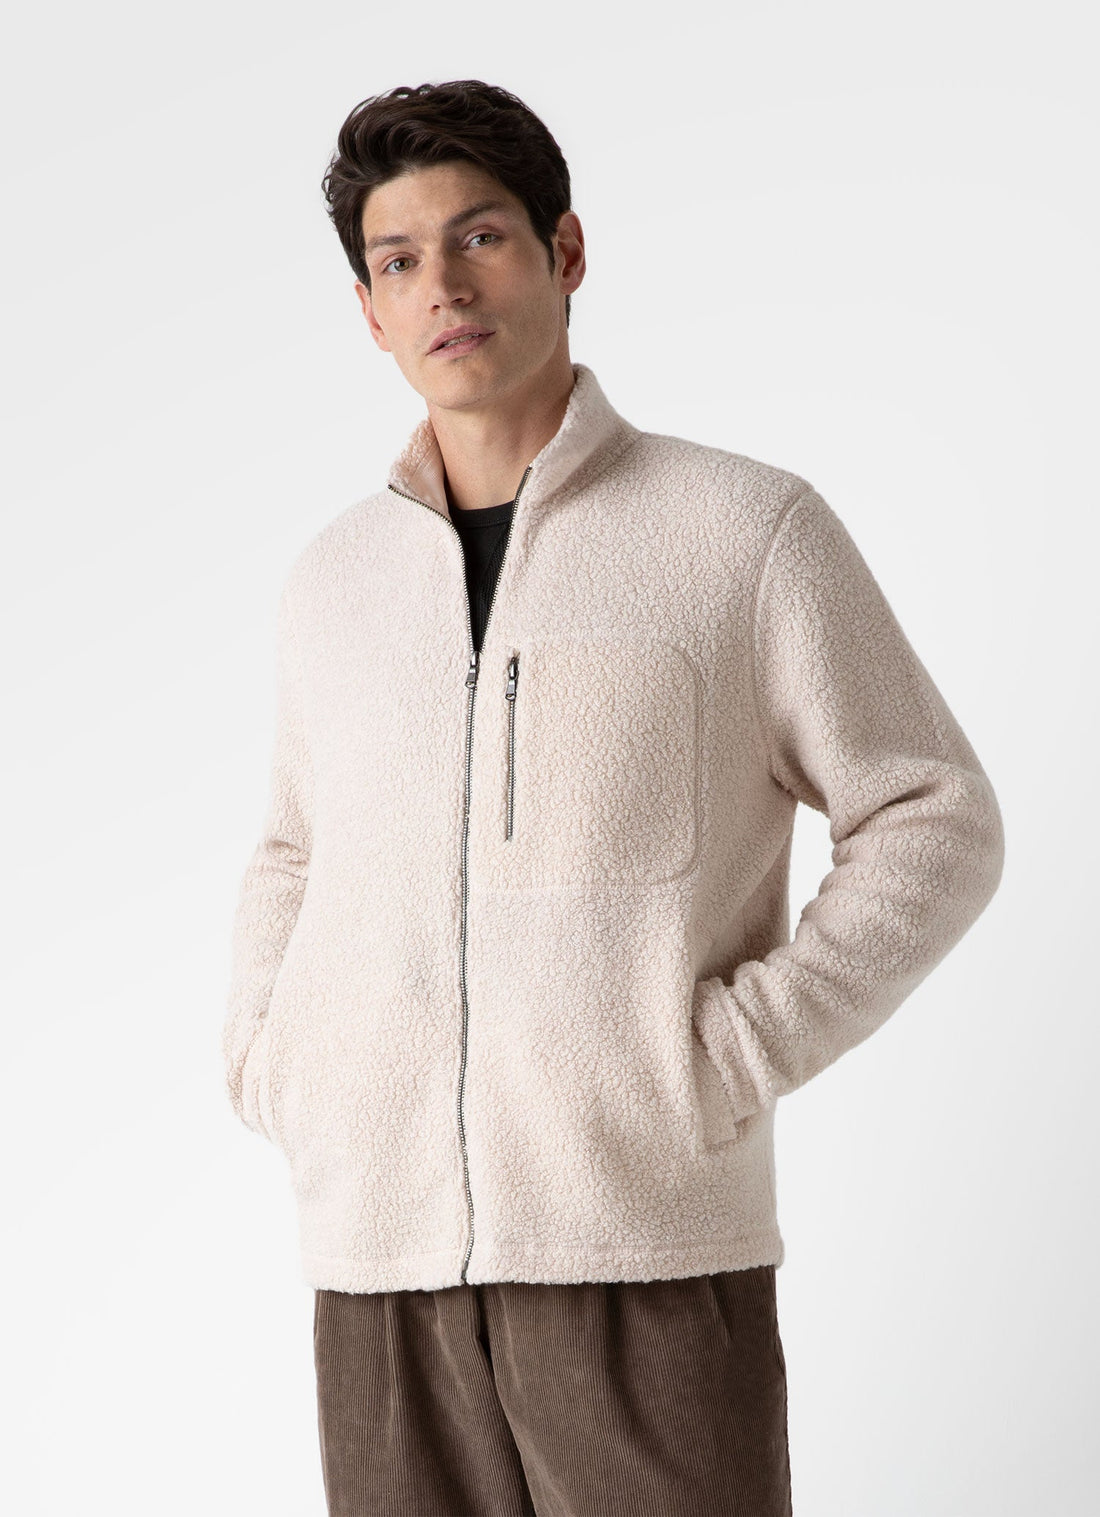 Men's Wool Fleece Jacket in Ecru